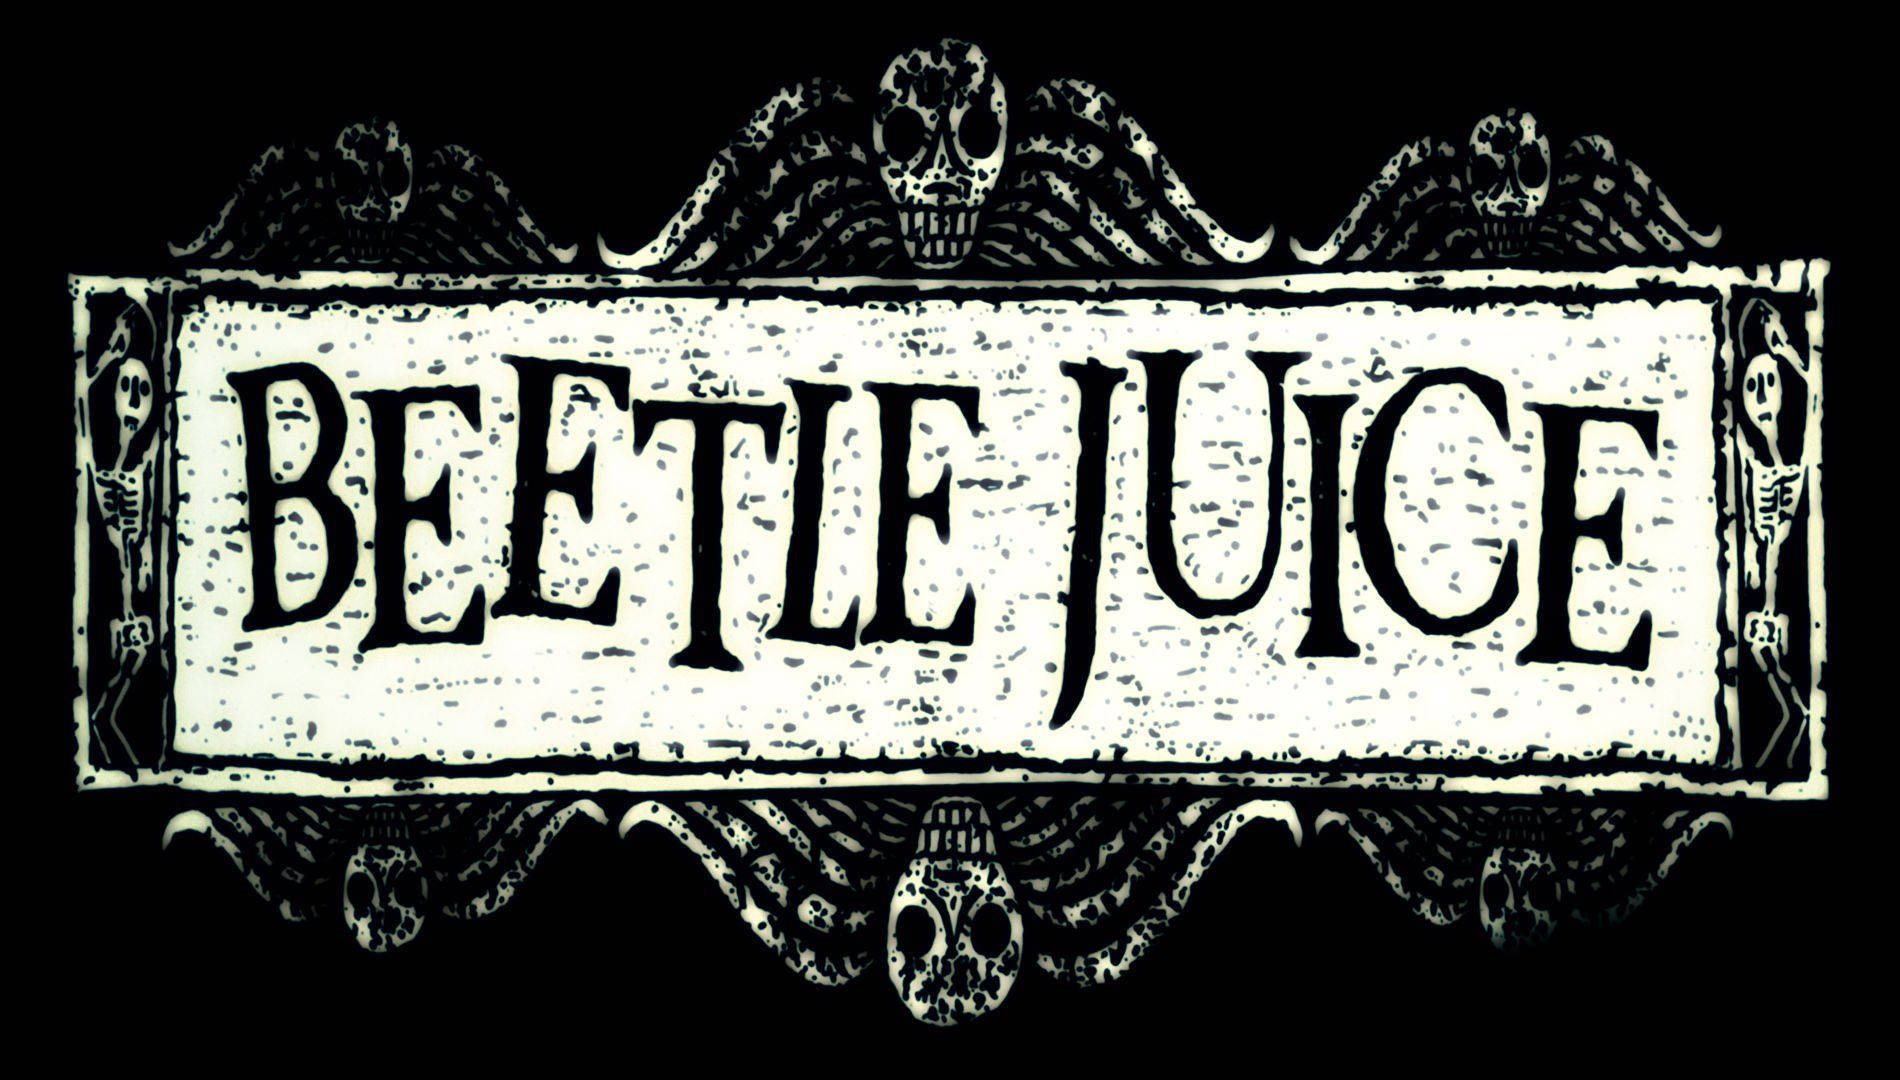 Beetlejuice Logo In Black Wallpaper